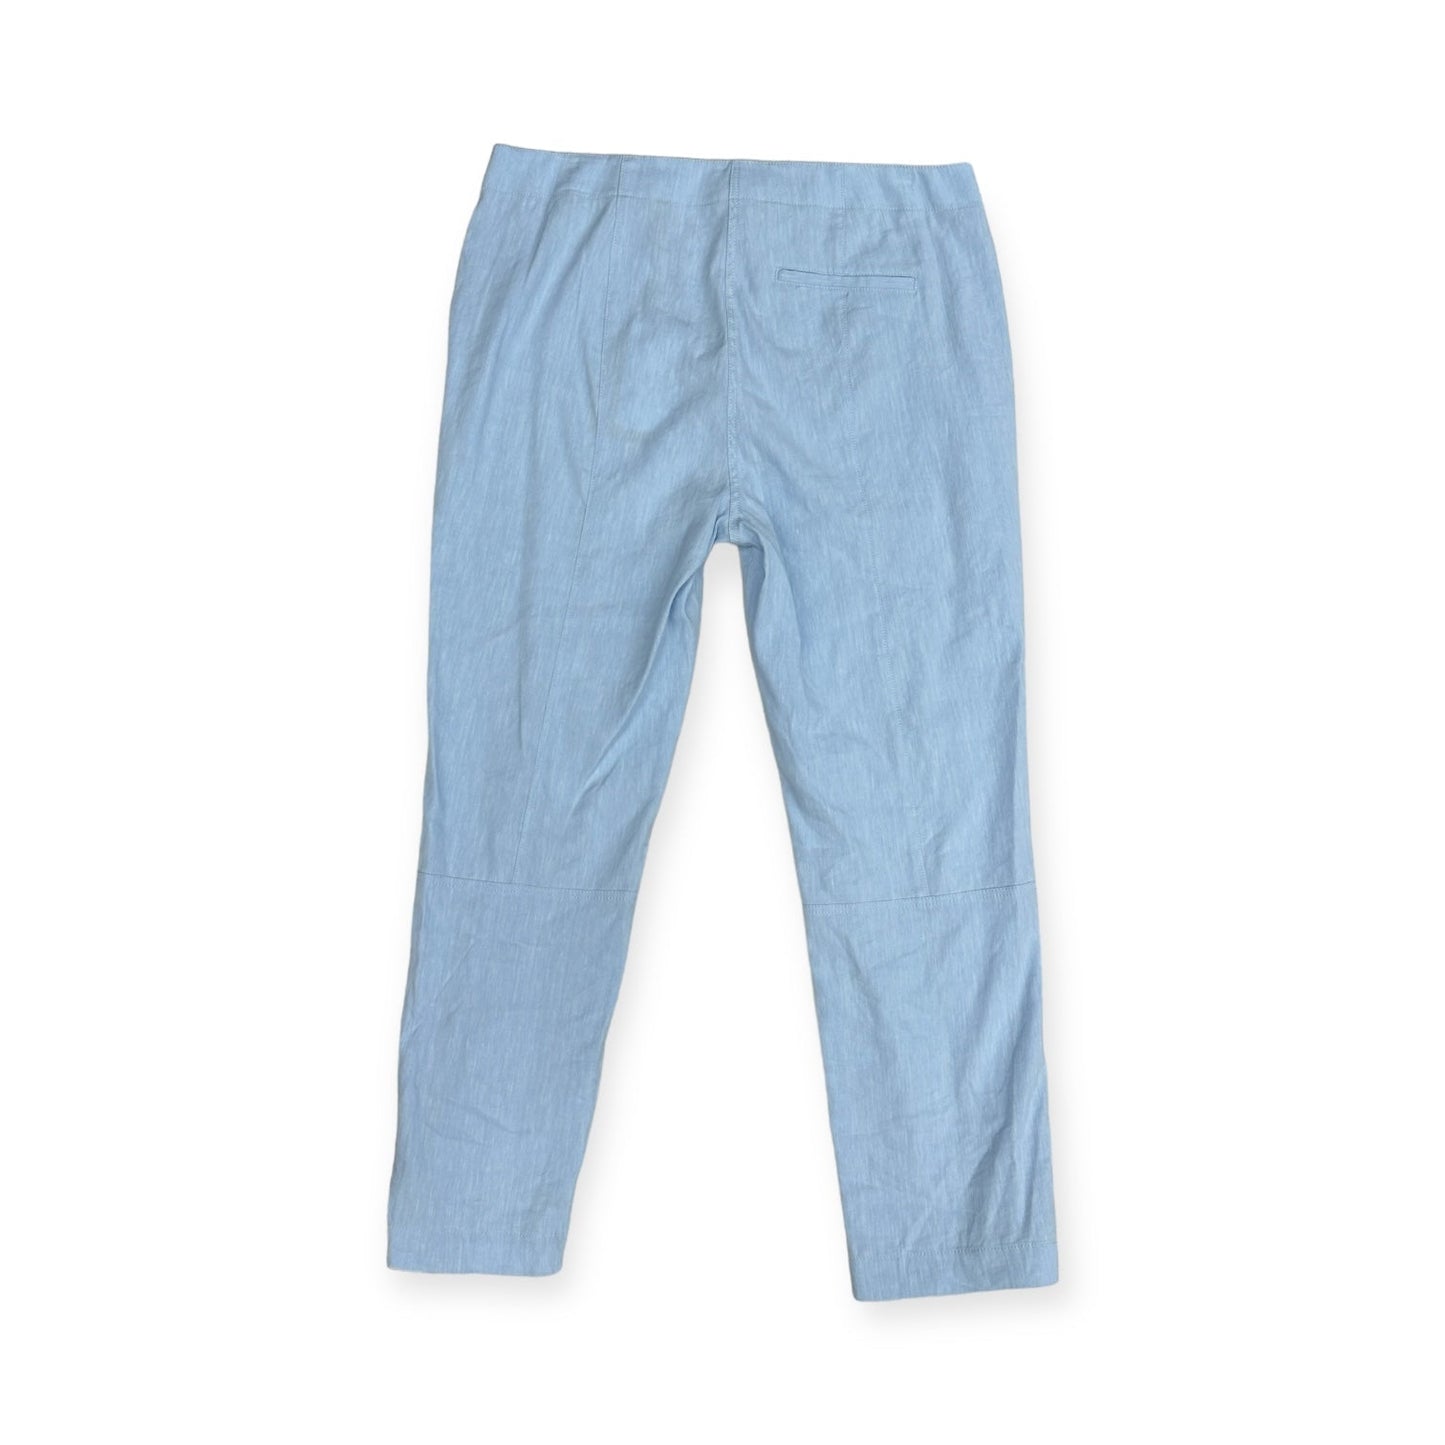 Blue Pants Dress Theory, Size 8